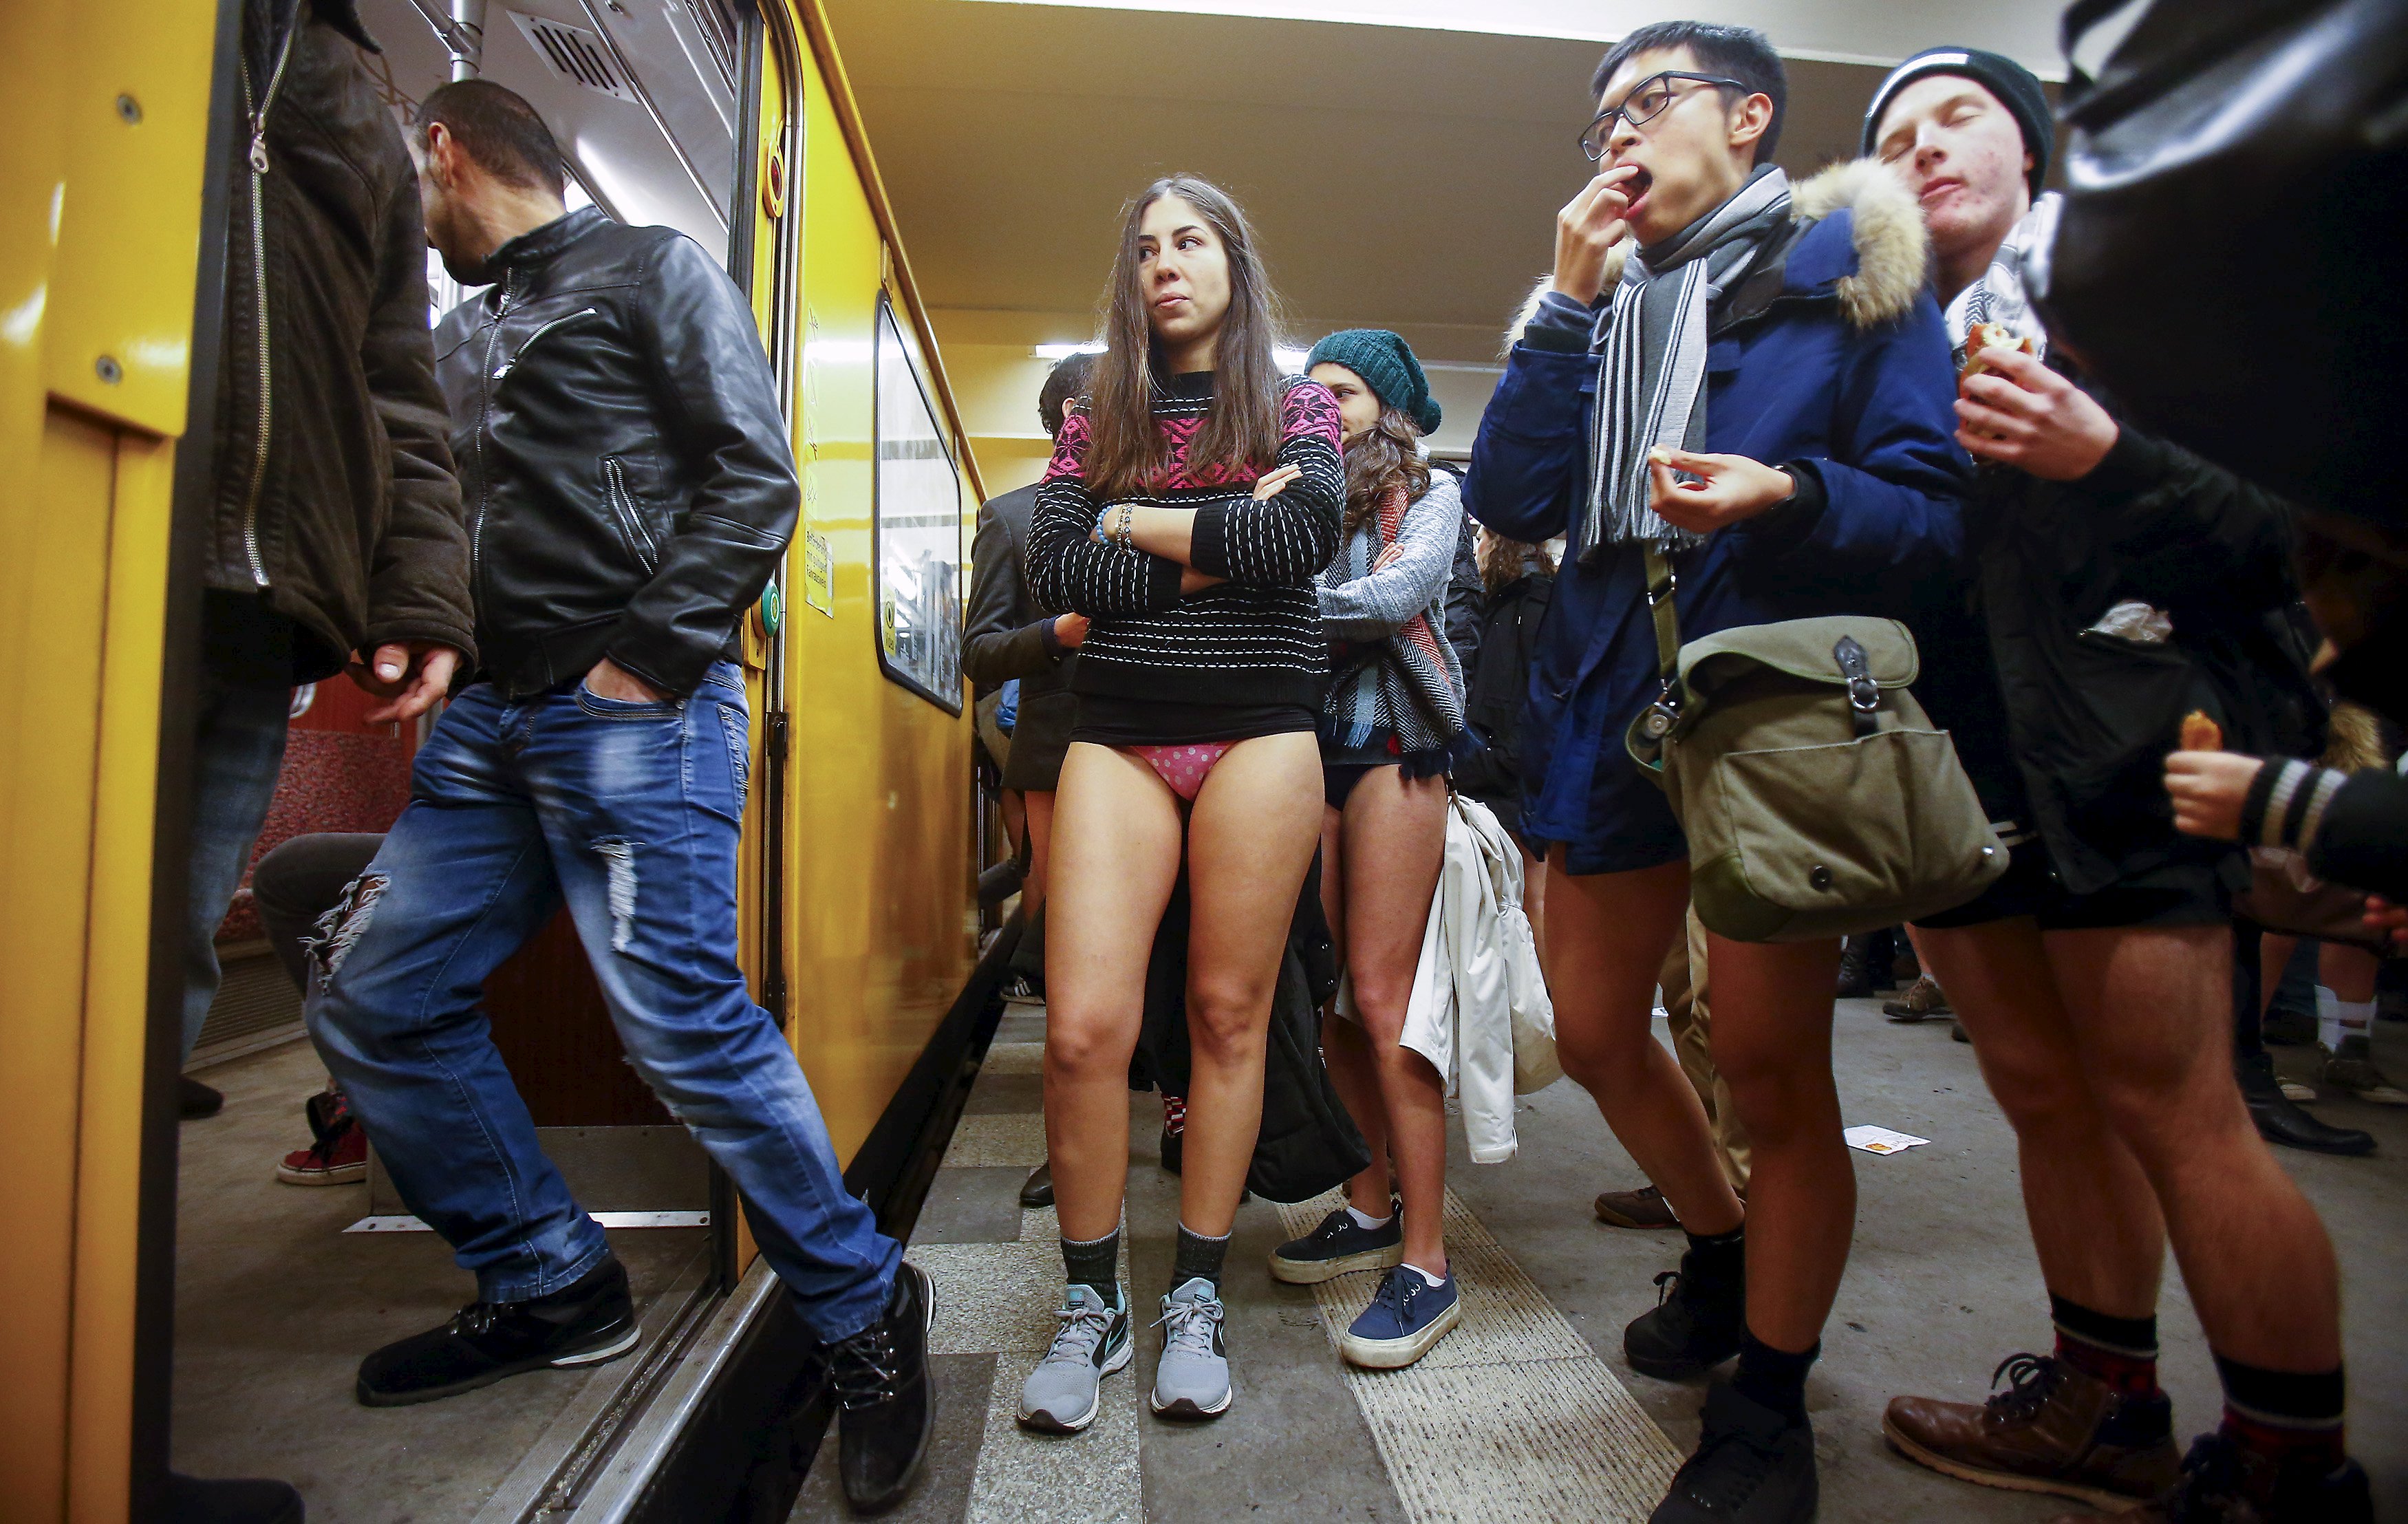 Засветы девушек в метро 